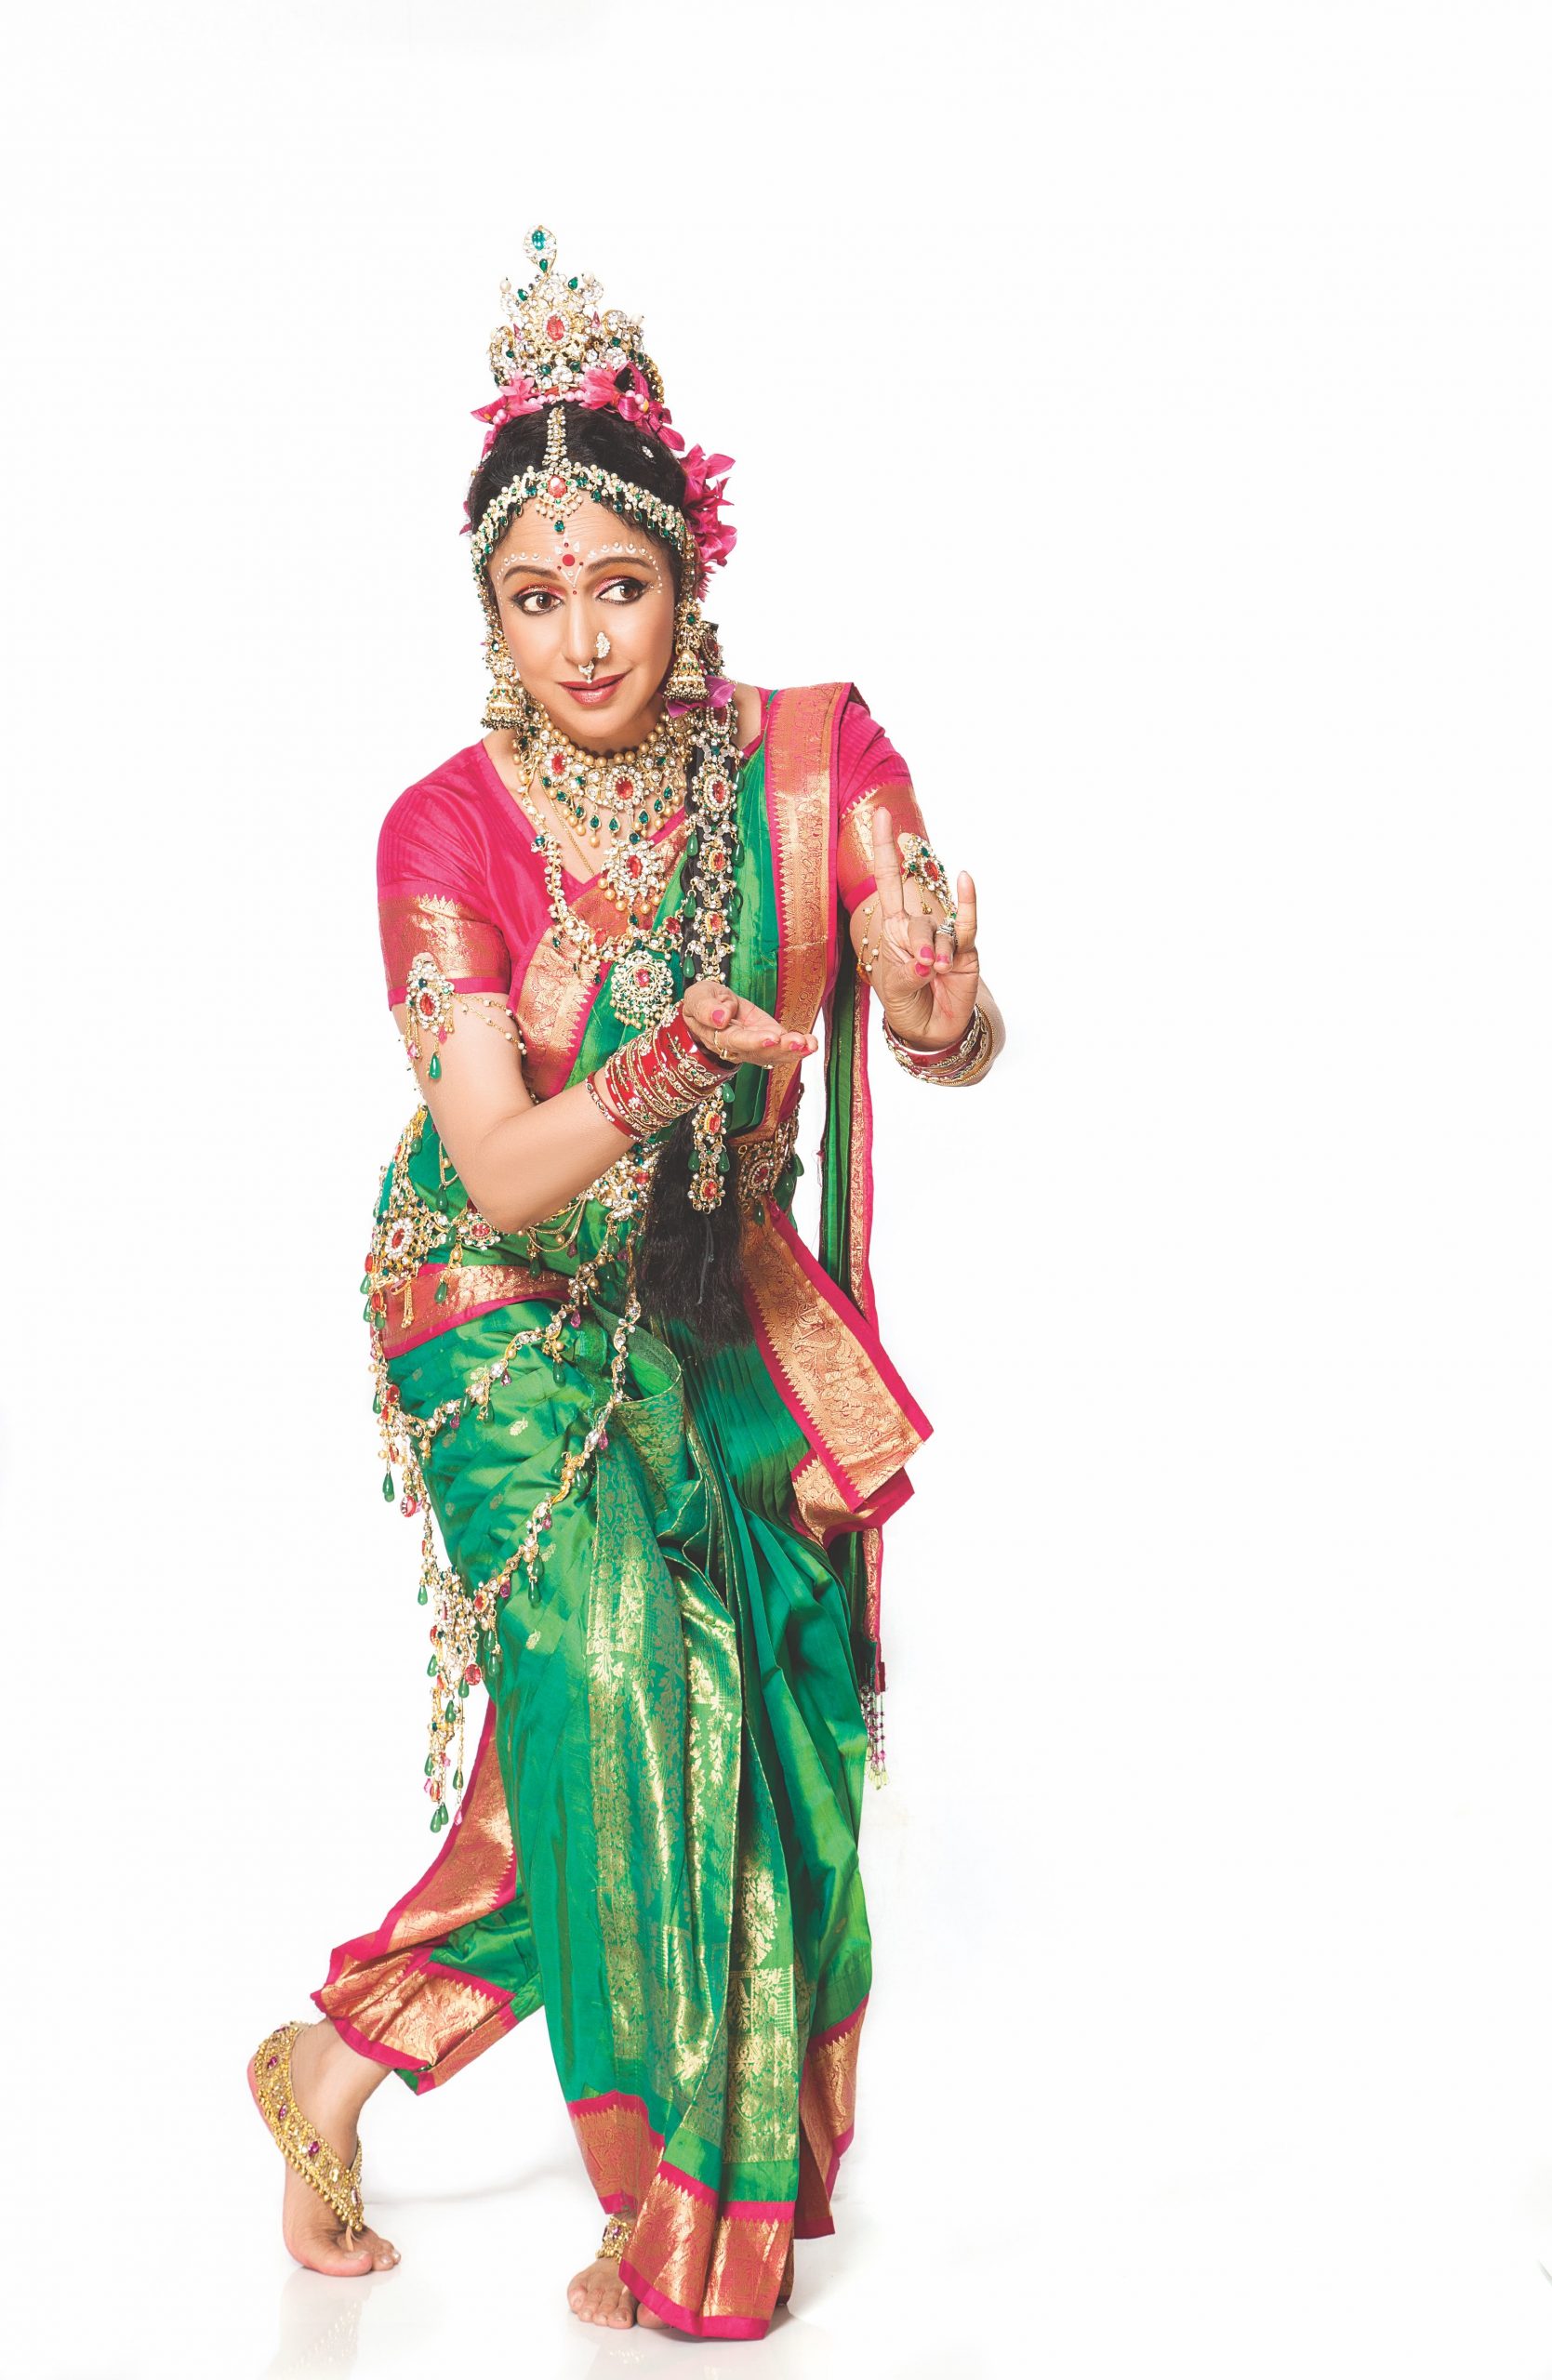 1669px x 2560px - Hema Malini as Radha - Day 2053 - Bhawana Somaaya